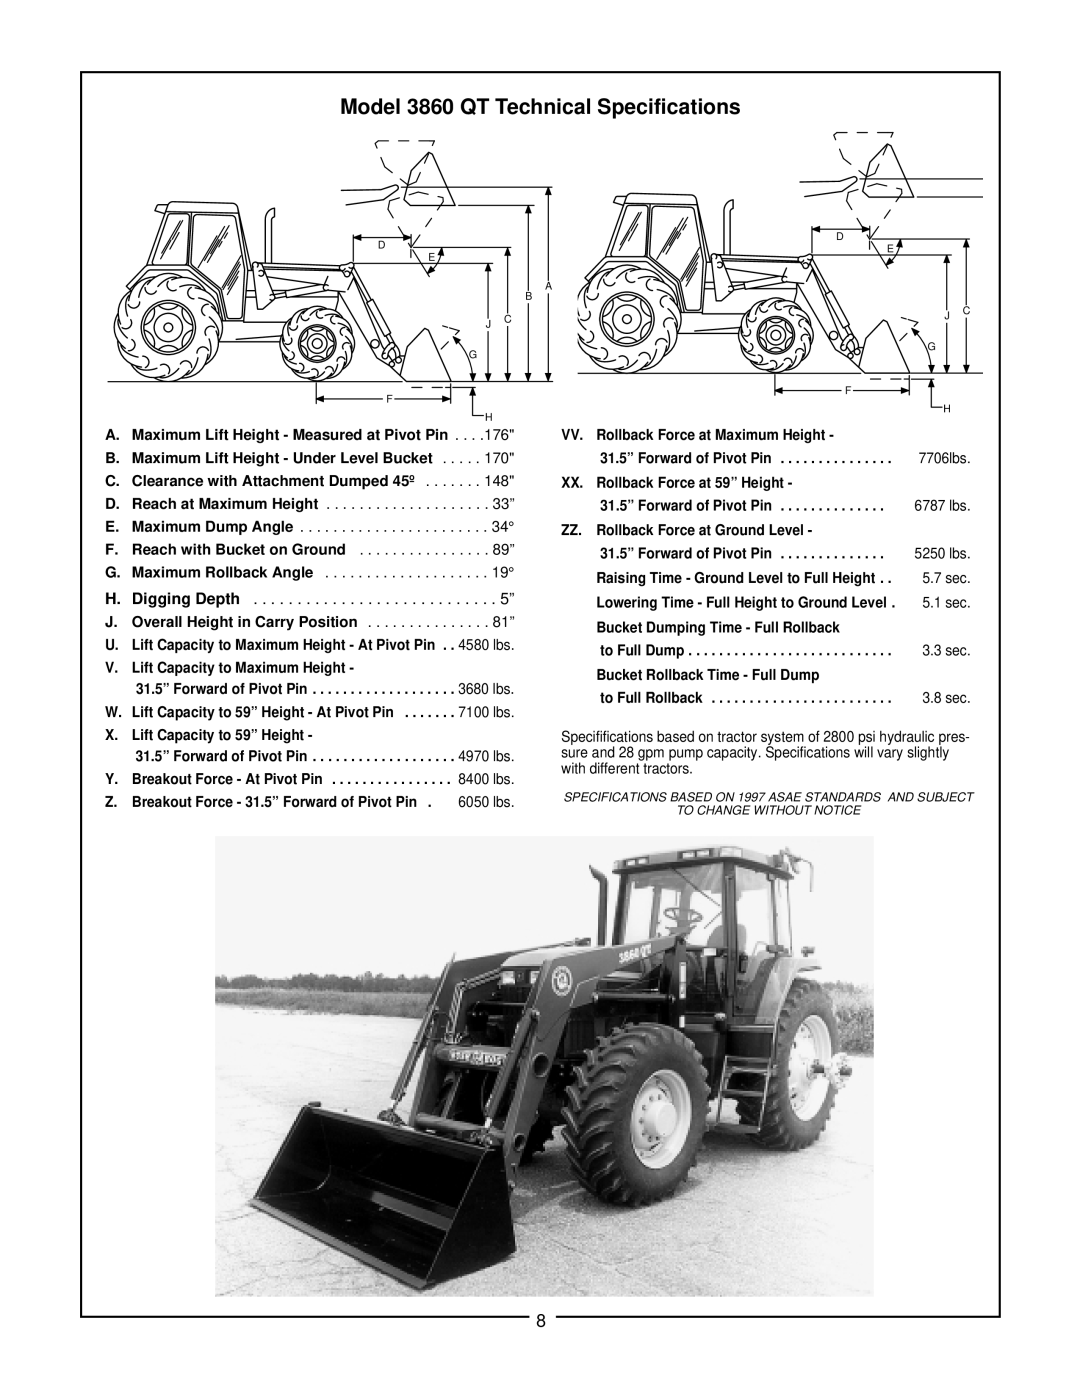 Bush Hog manual Model 3860 QT Technical Specifications, Digging Depth 